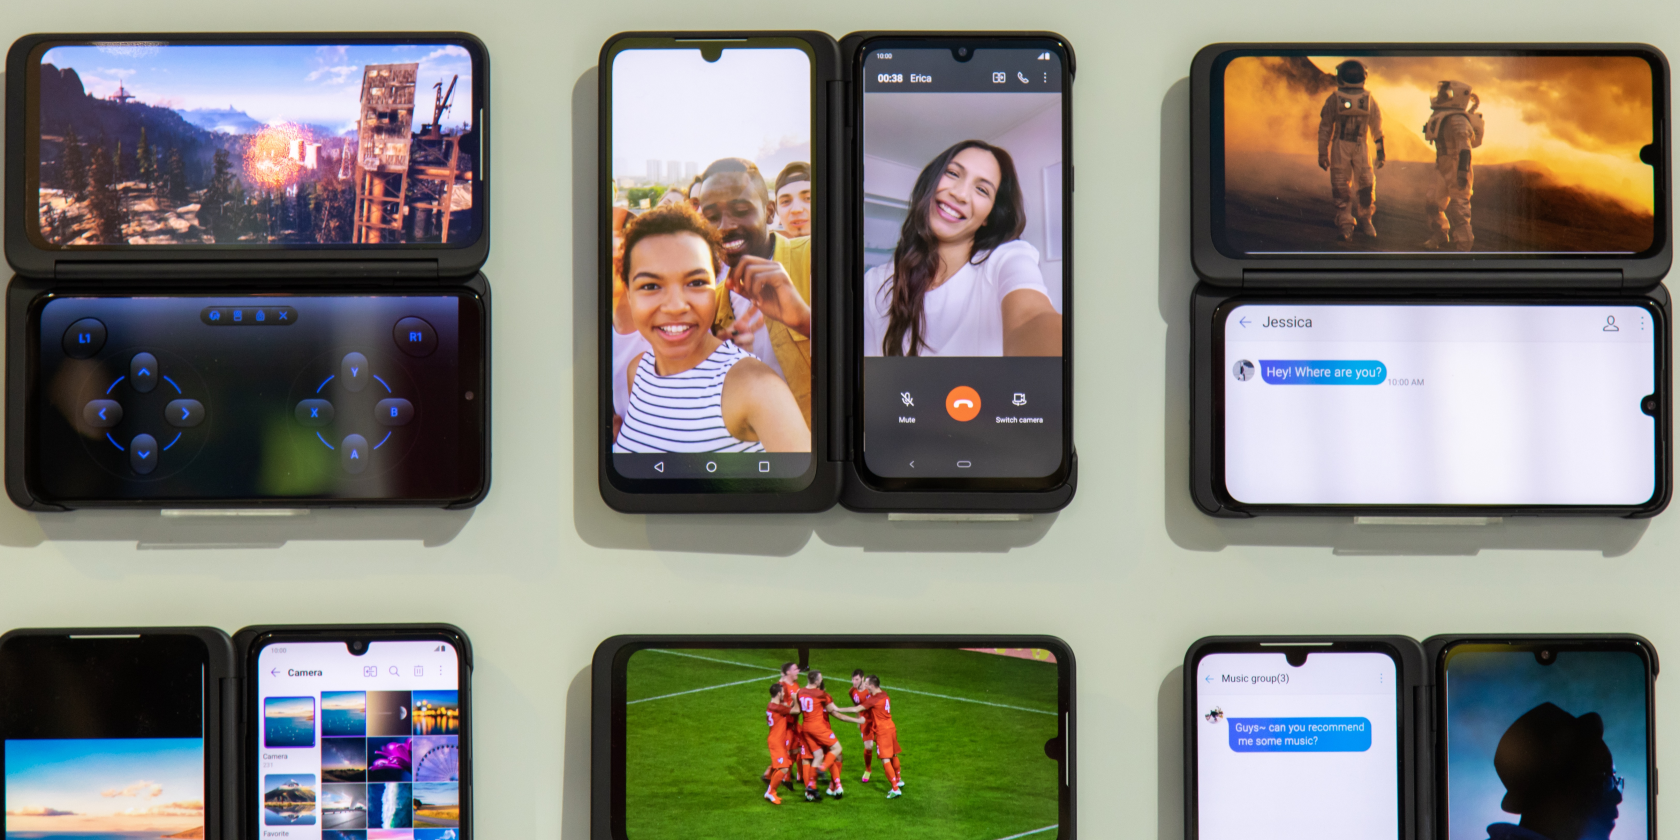 LG G8X ThinQ Dual Screen smartphone announced at IFA 2019